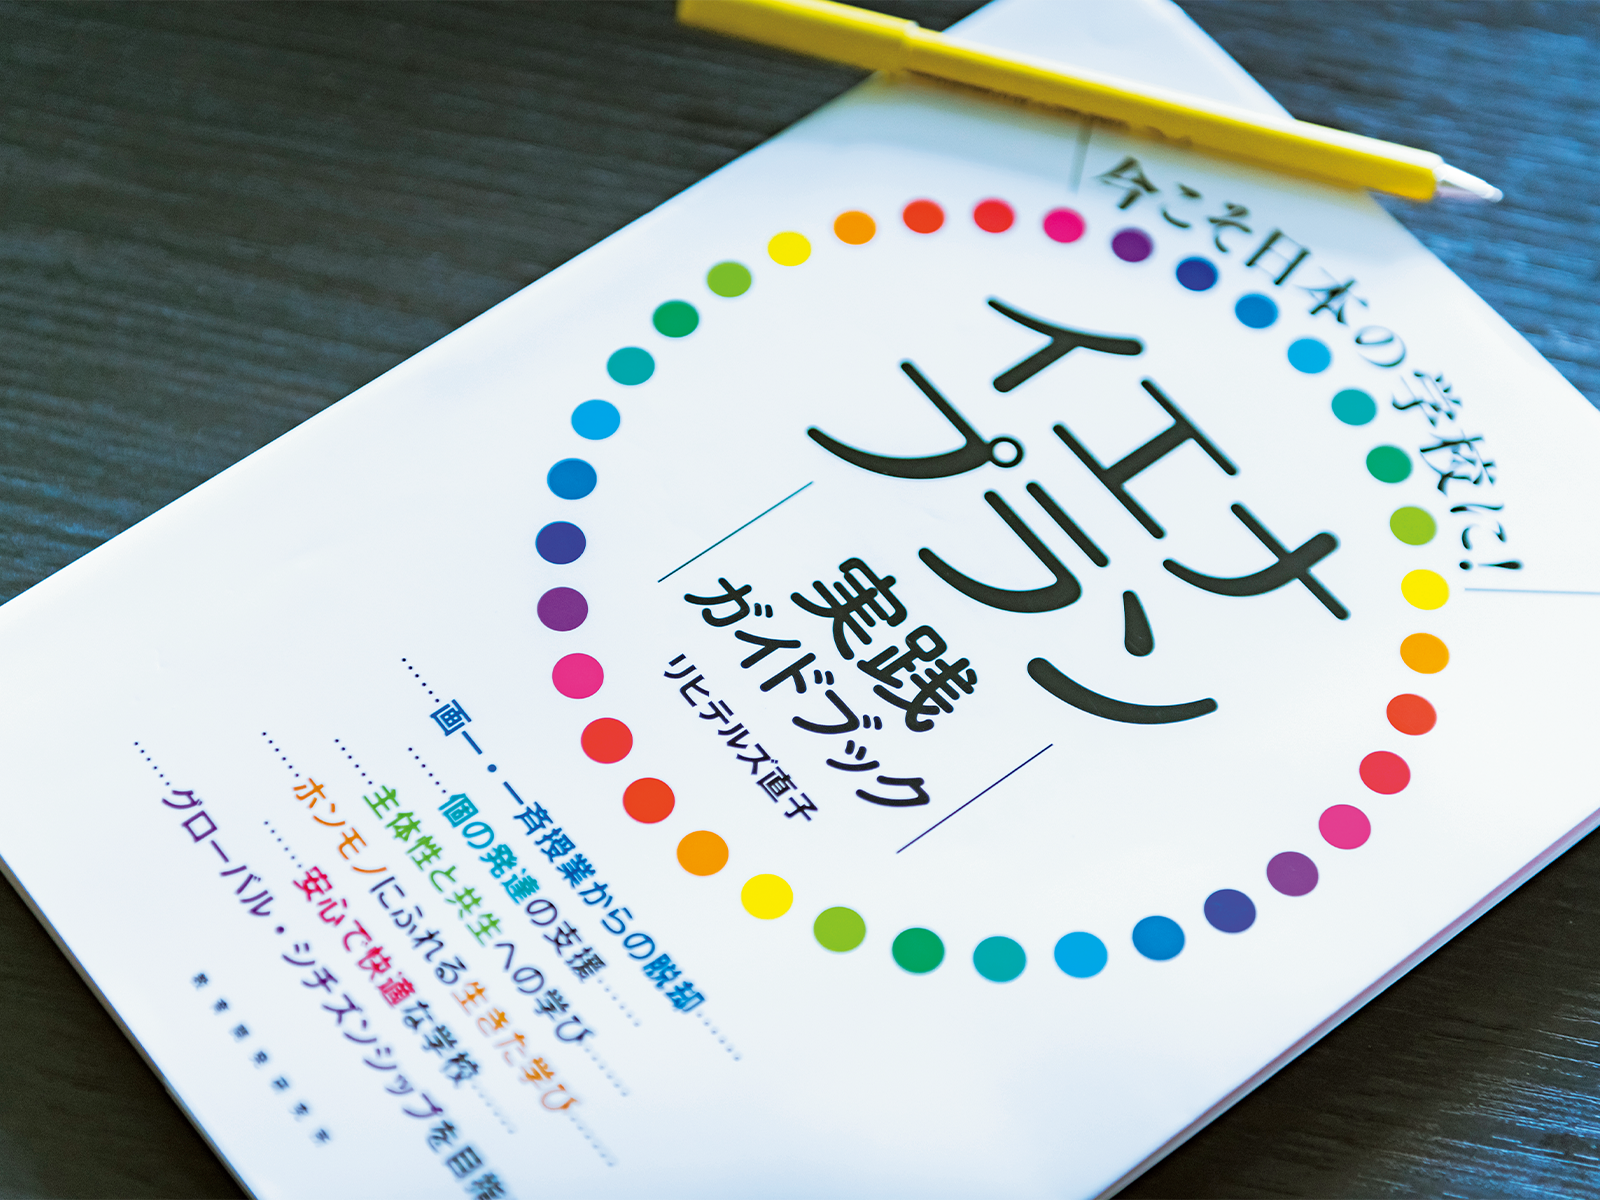 9月に発刊したばかりのリヒテルズさんの新著『今こそ日本の学校に！　イエナプラン実践ガイドブック』（教育開発研究所）。イエナプラン教育への関心が高まる中、押さえておきたい歴史、考え方、情報などがわかりやすくまとめられている。